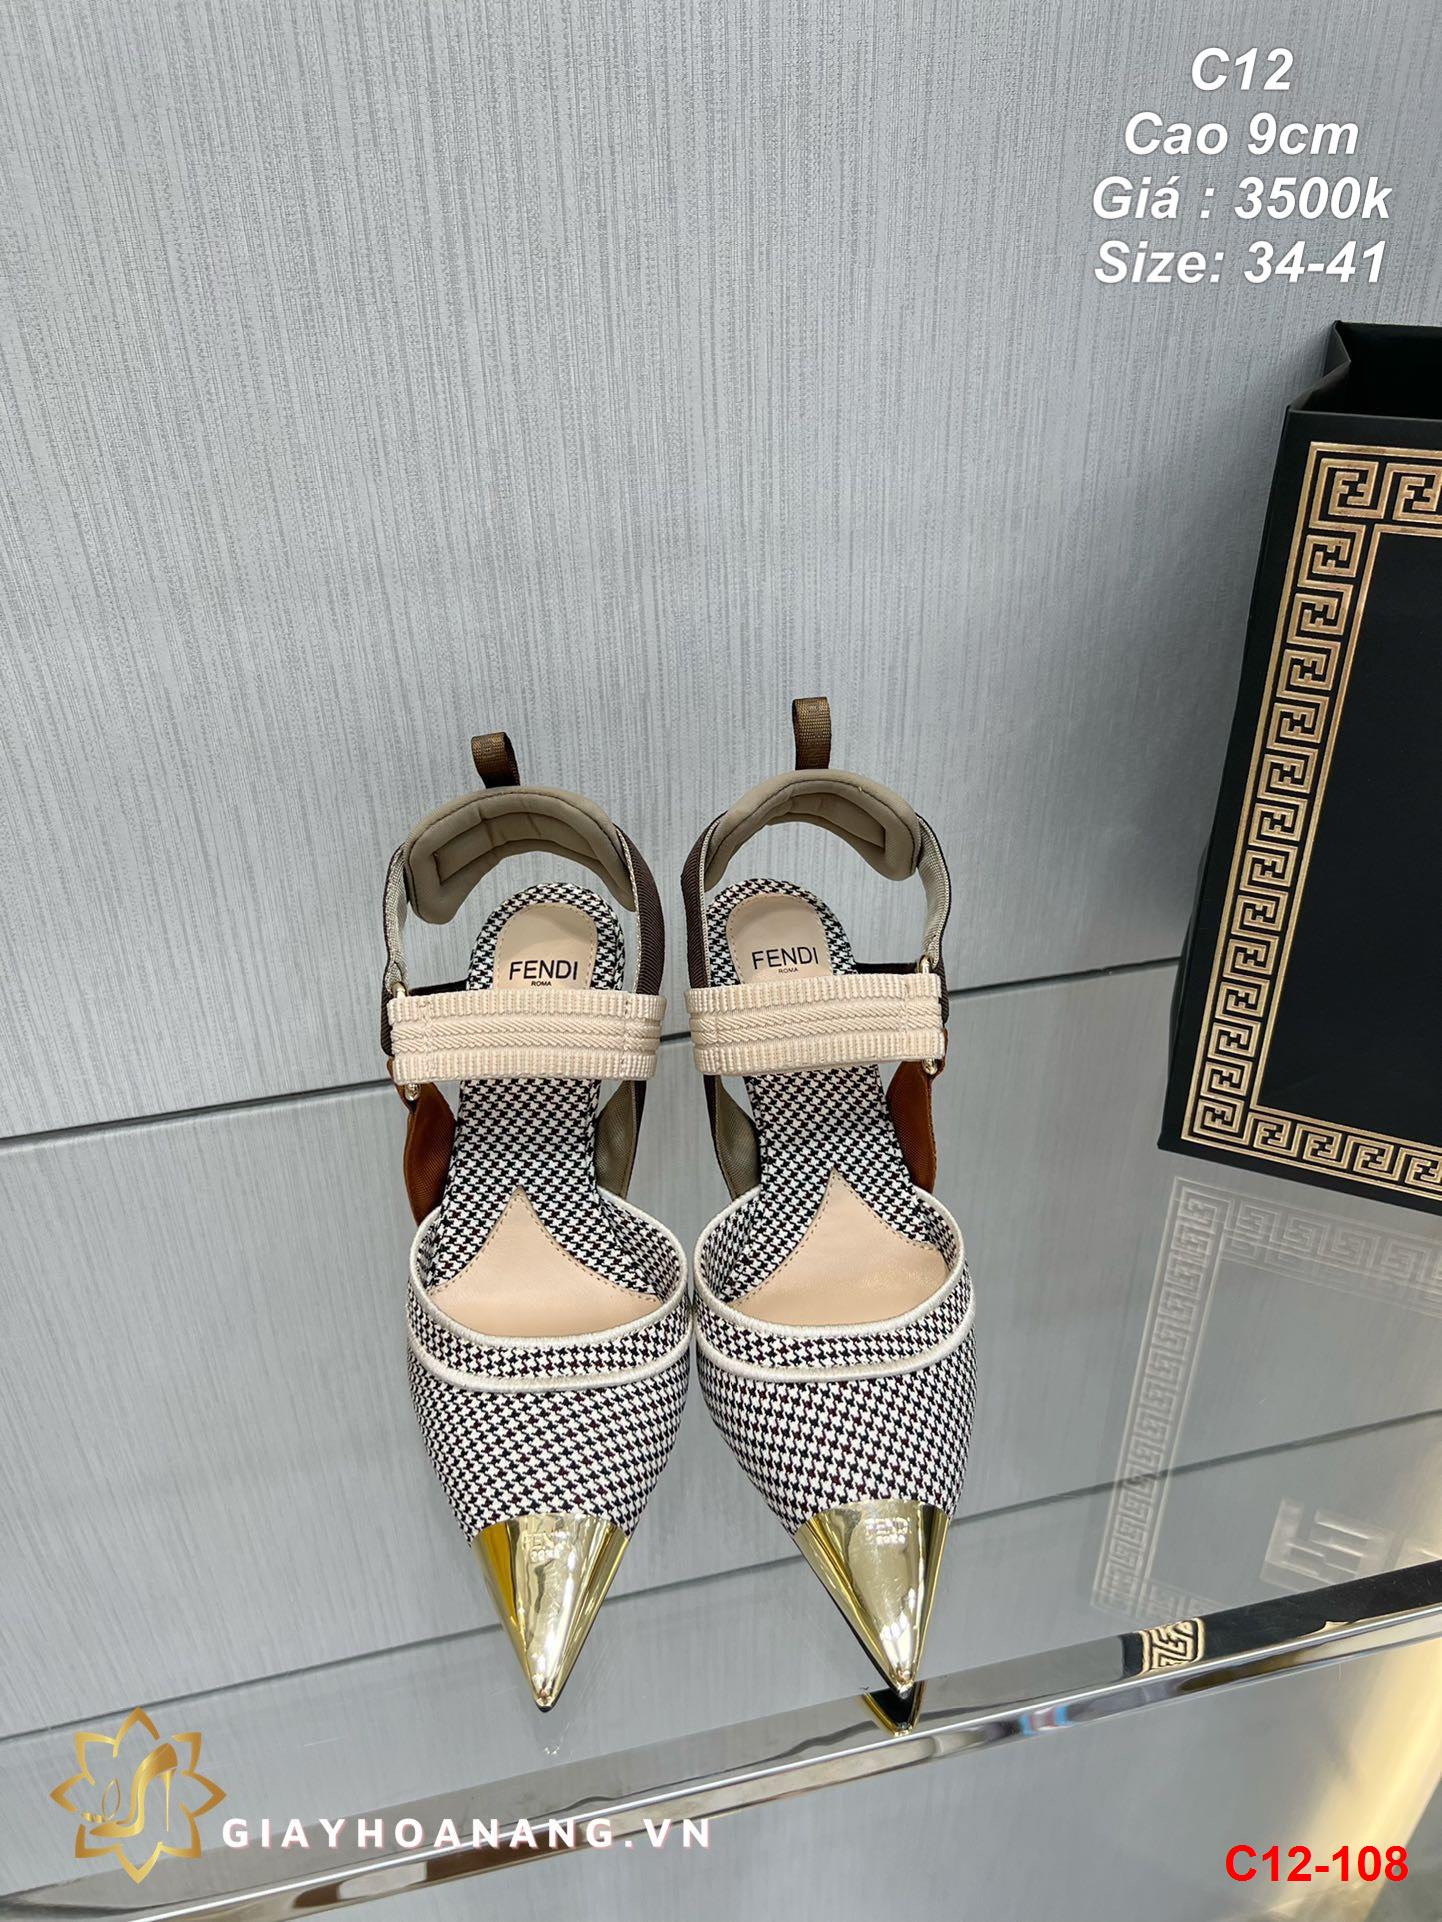 C12-108 Fendi sandal cao 9cm siêu cấp